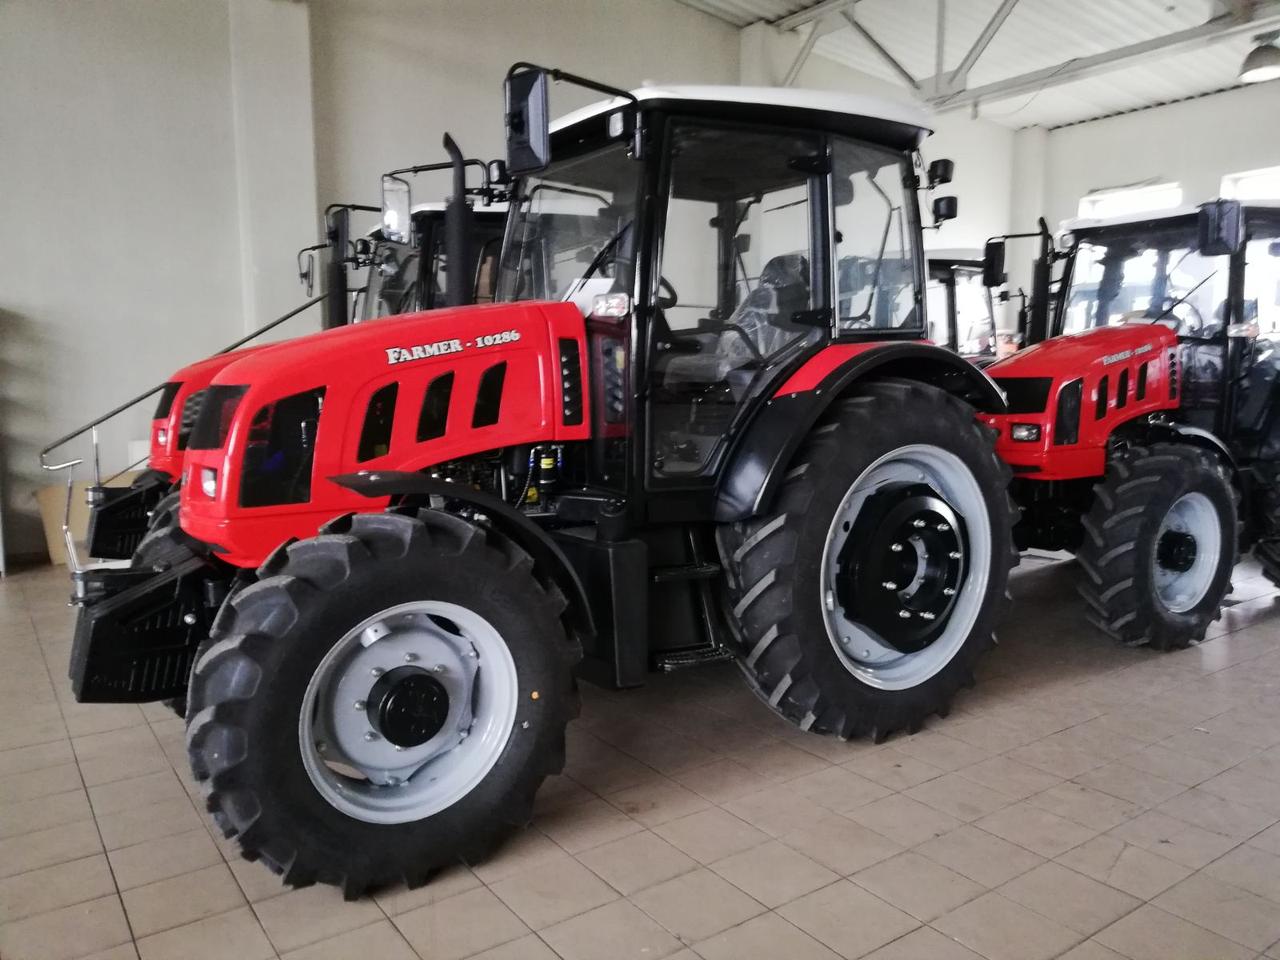 Трактор farmer купить скачать cronos plus c ключом 2015